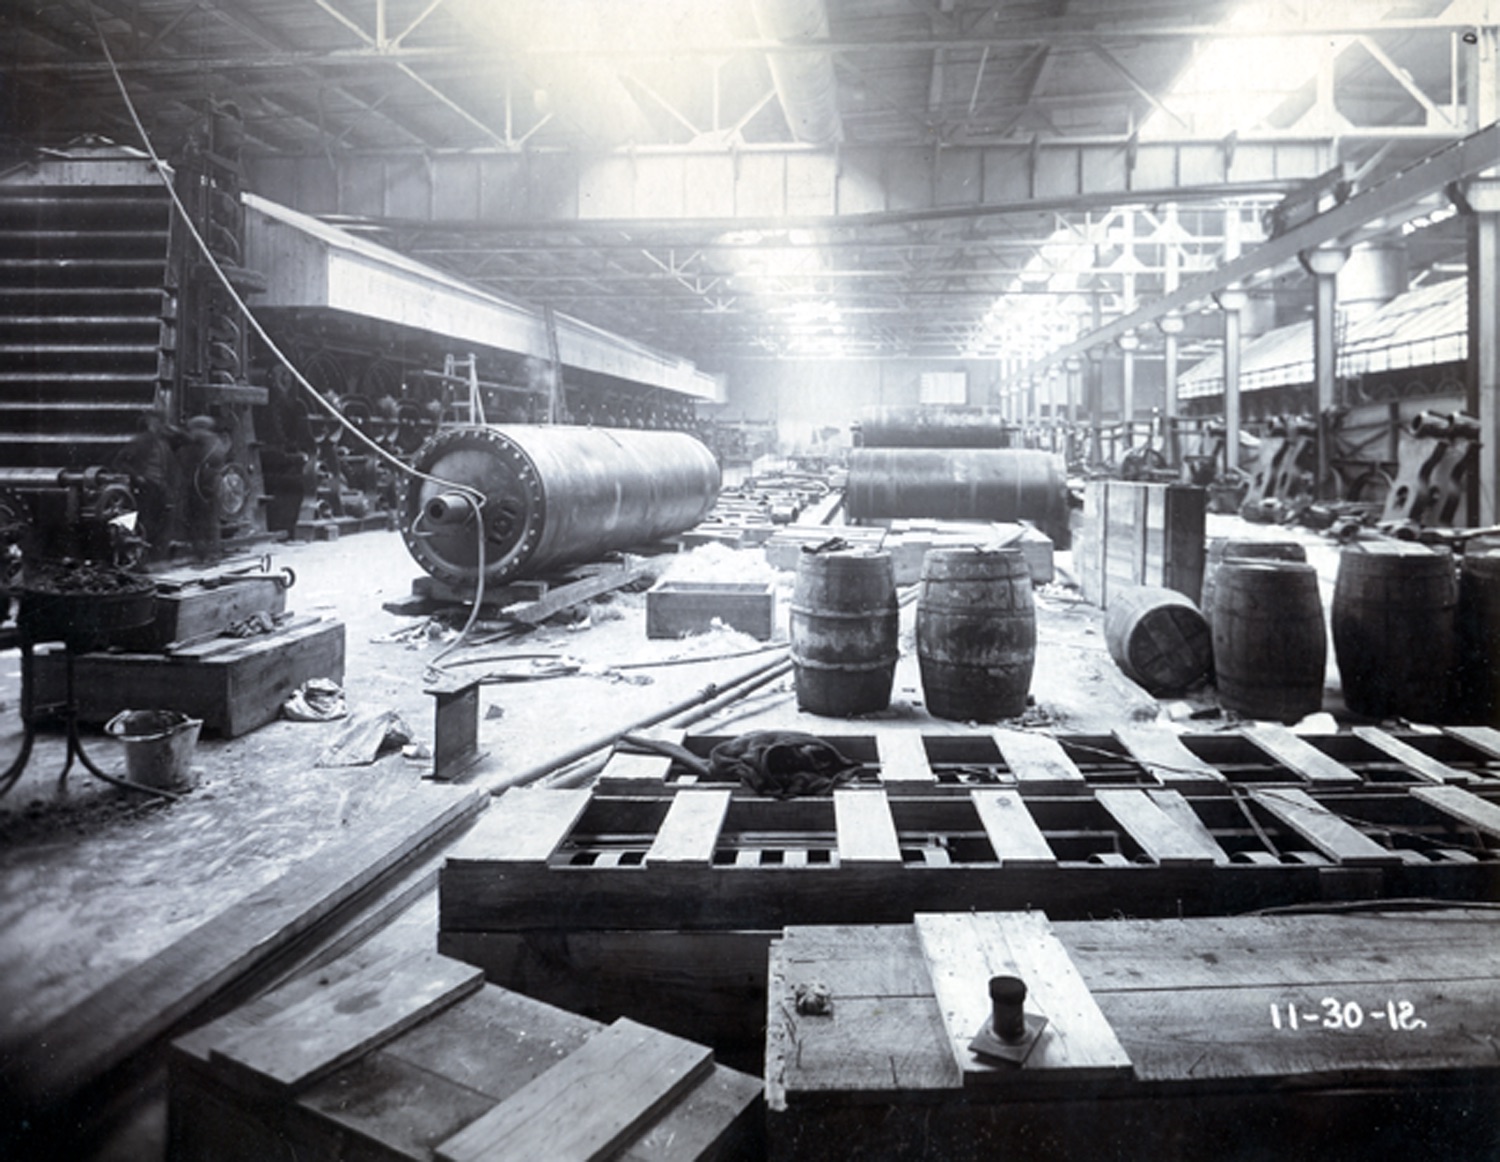 Entrepôt du moulin à papier. Barils et caisses en bois, rouleaux à papier éparpillés sur le plancher.